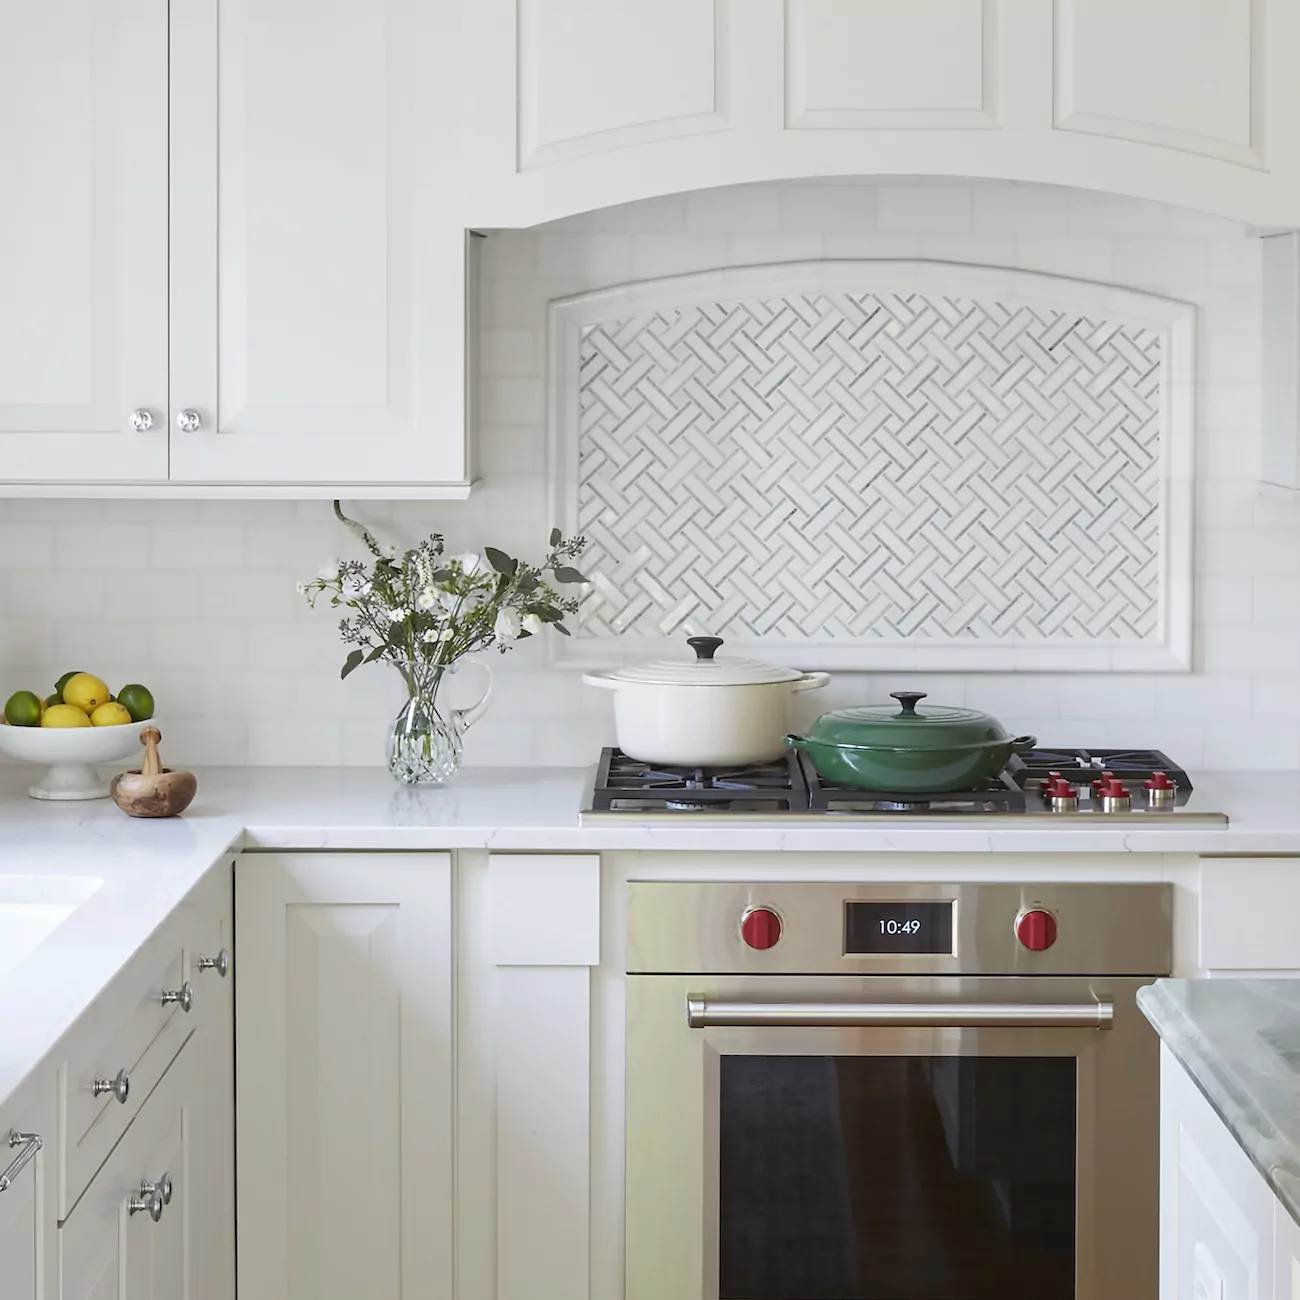 stainless-steel-oven-kitchen-interior-design